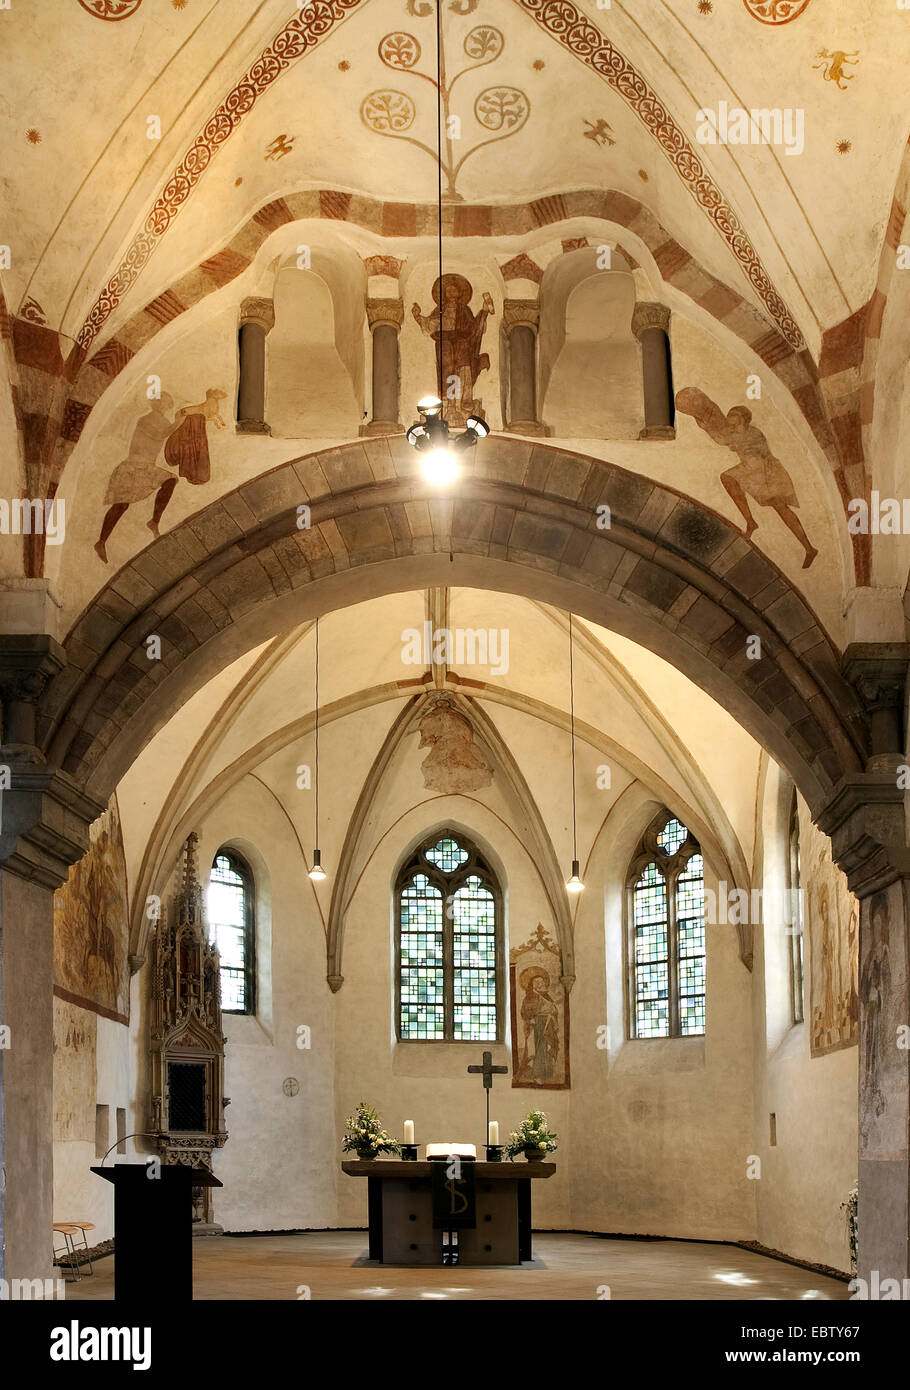 Innenansicht der 1000 Jahre alte Kirche in Stiepel, Stiepeler Dorfkirche, Deutschland, Nordrhein-Westfalen, Ruhrgebiet, Bochum Stockfoto